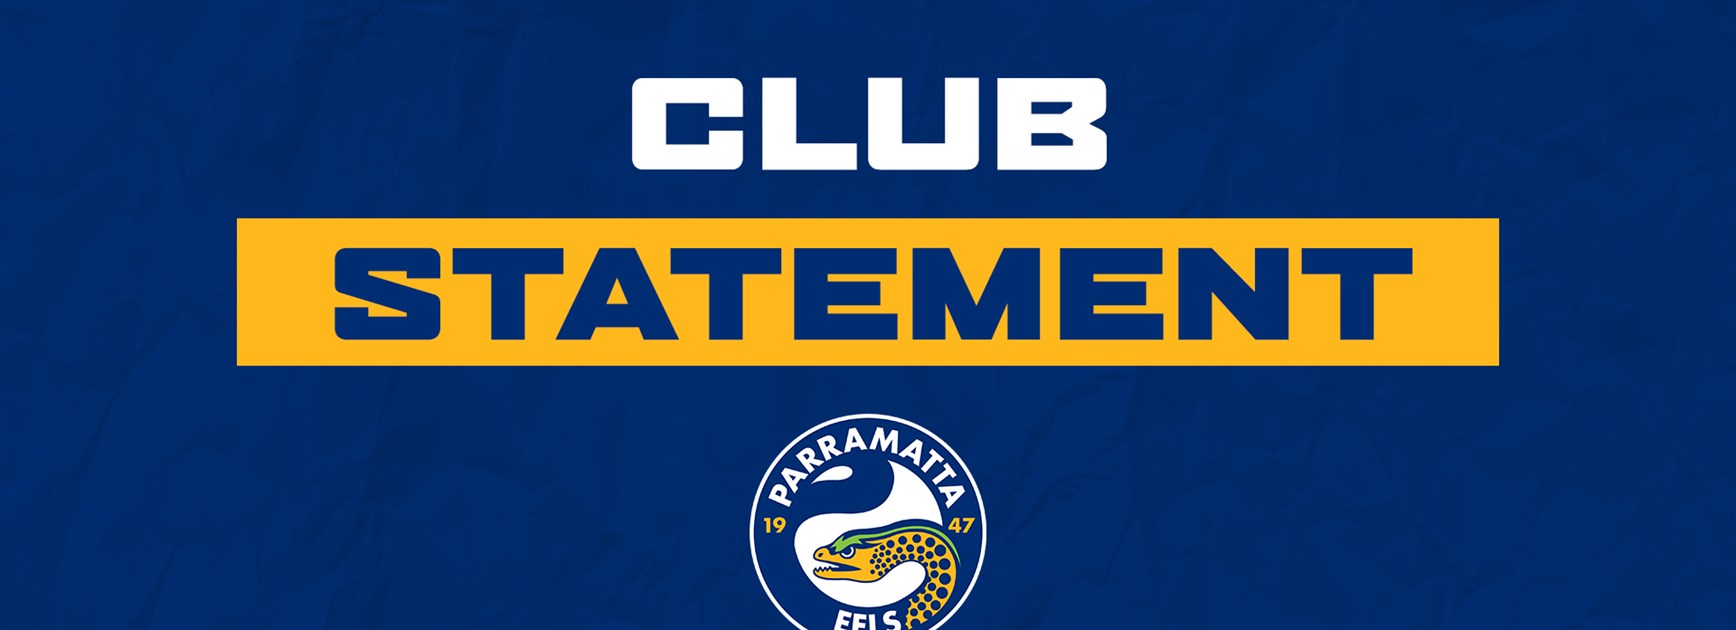 Club Statement: Ryan Matterson